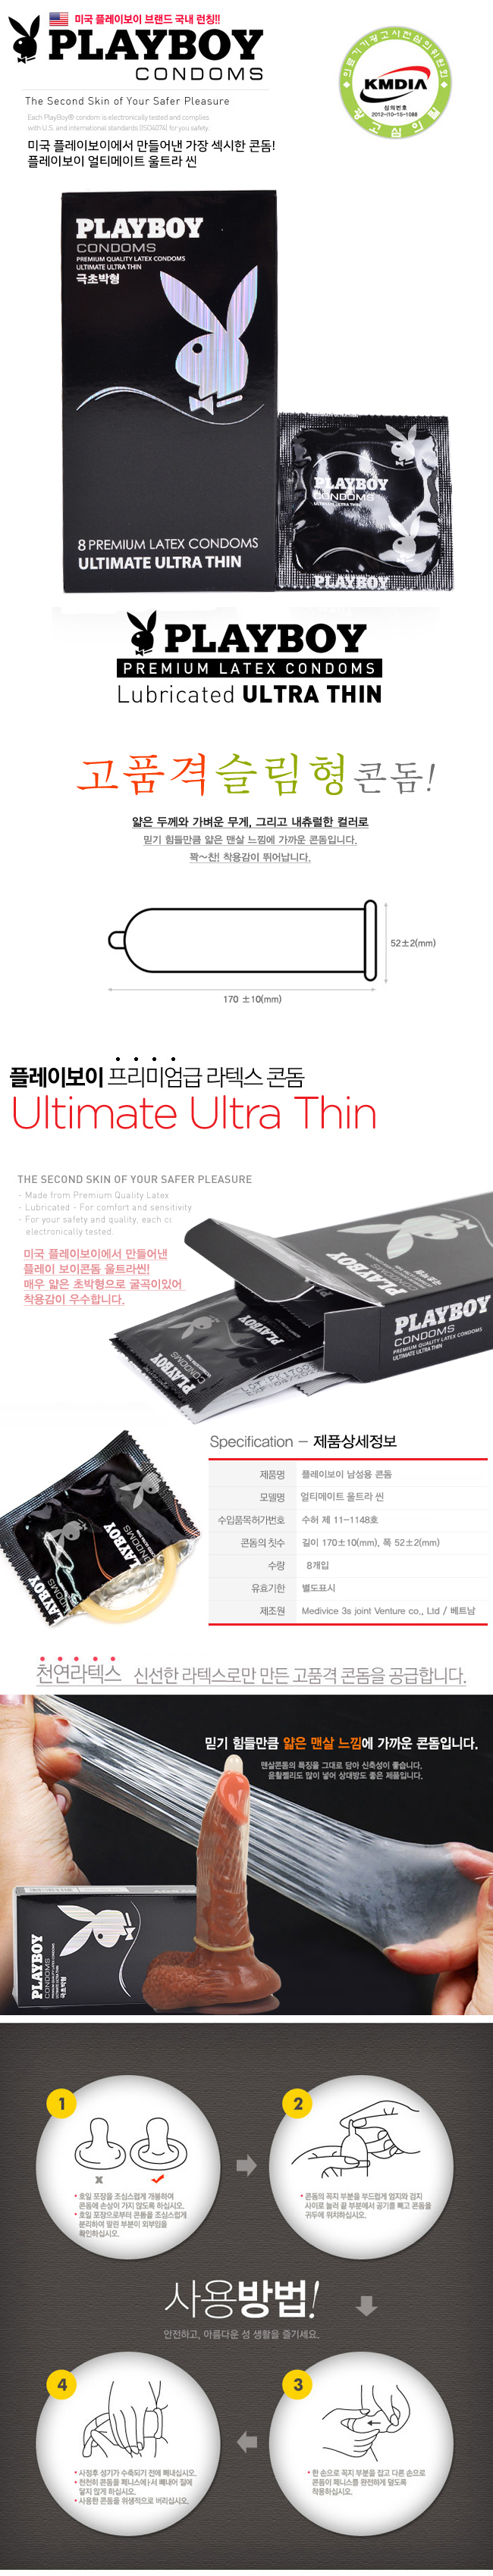 [극초박형] 플레이보이 얼티메이트 울트라 씬(Playboy Ultimate Ultra Thin)